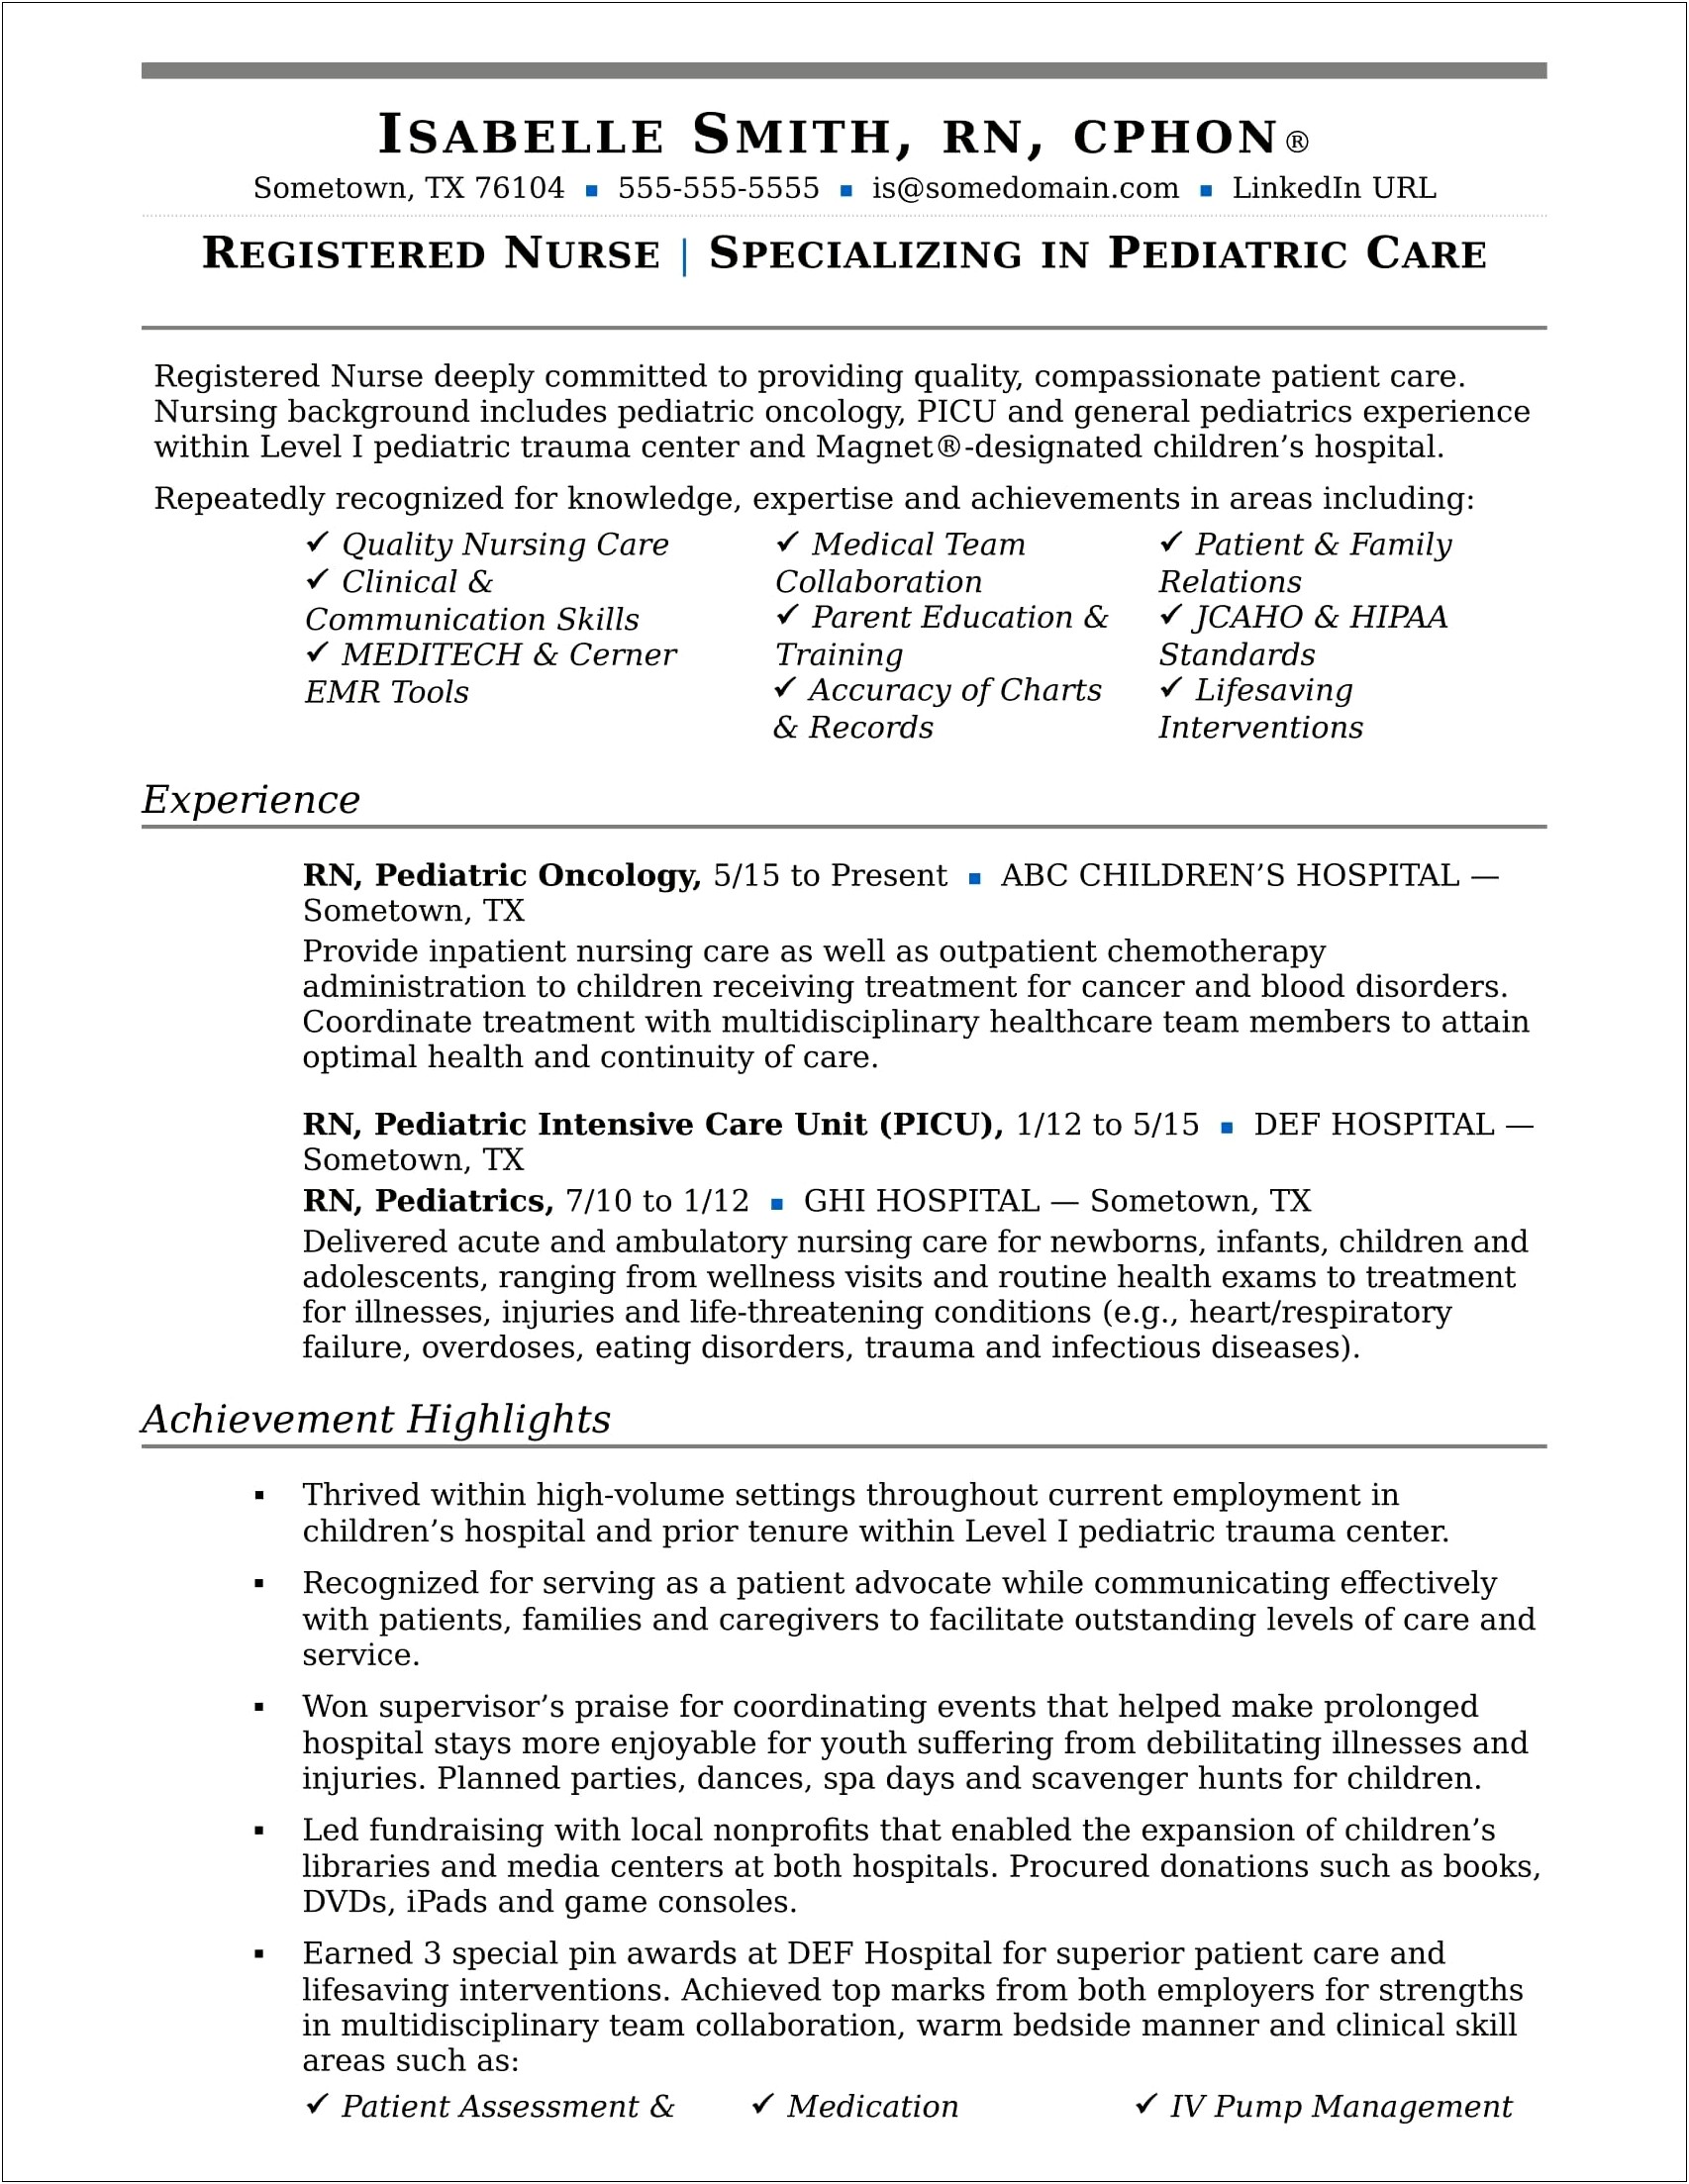 Sample Resume For Newly Registered Nurses